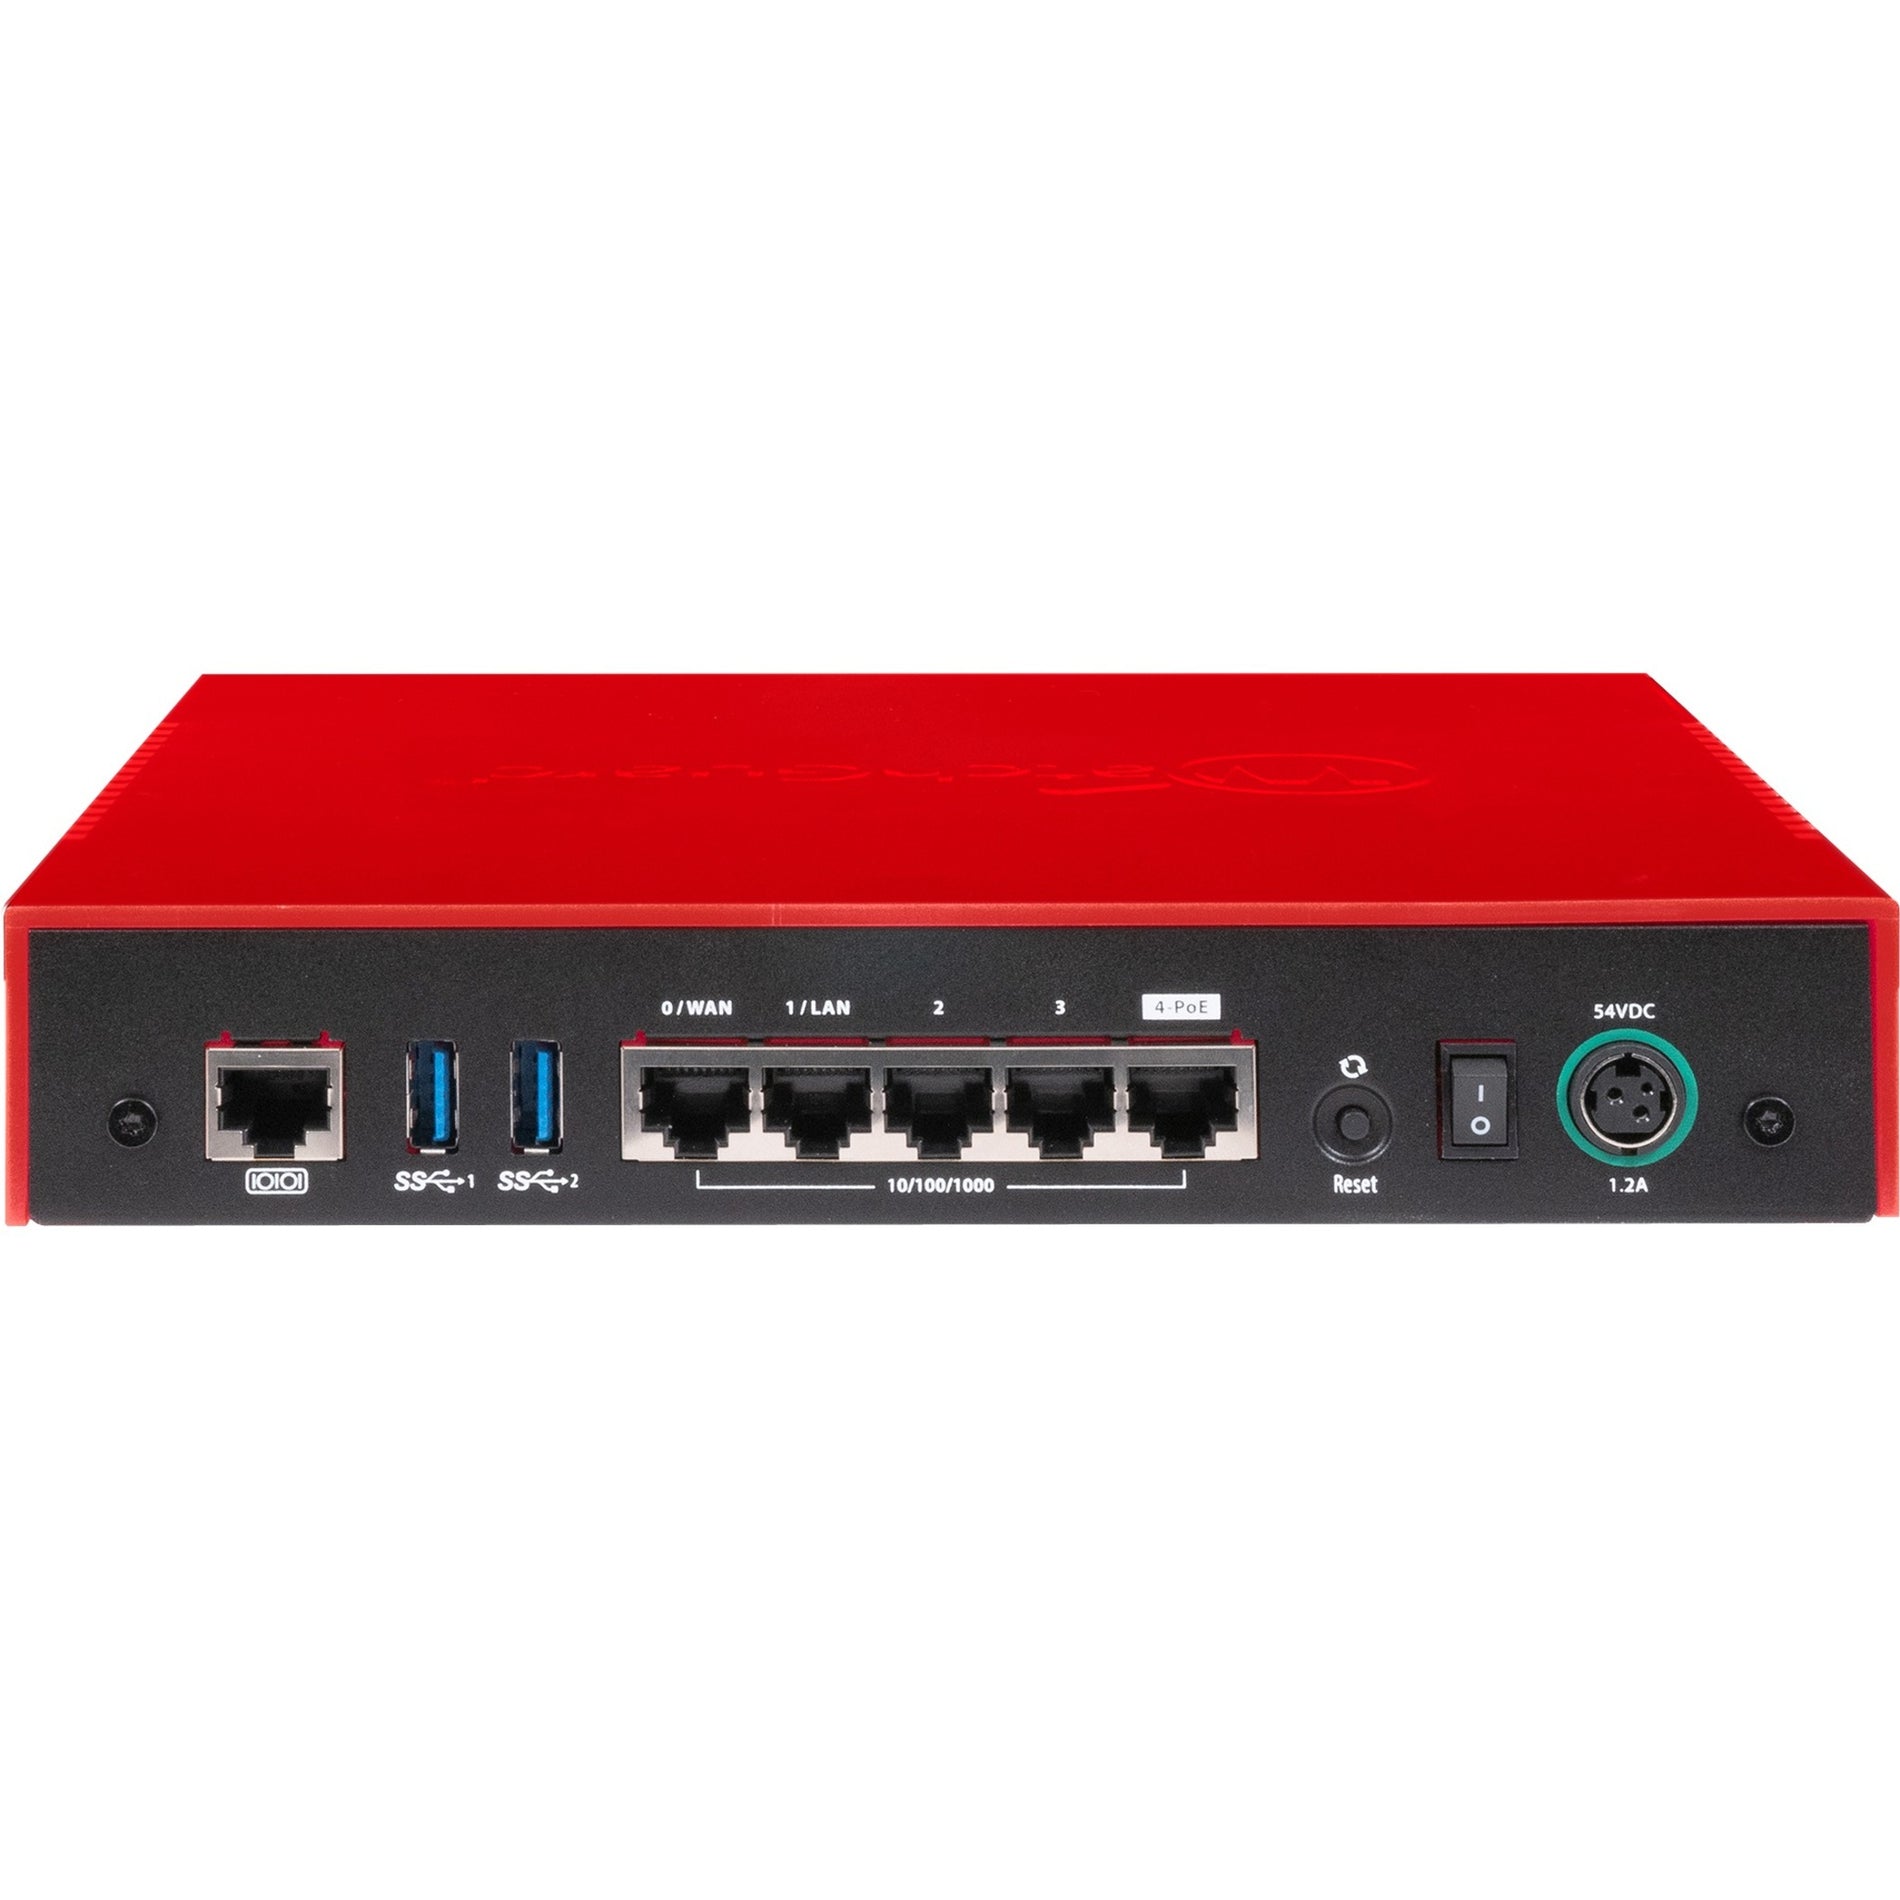 WatchGuard Firebox T40 Network Security/Firewall Appliance [Discontinued]